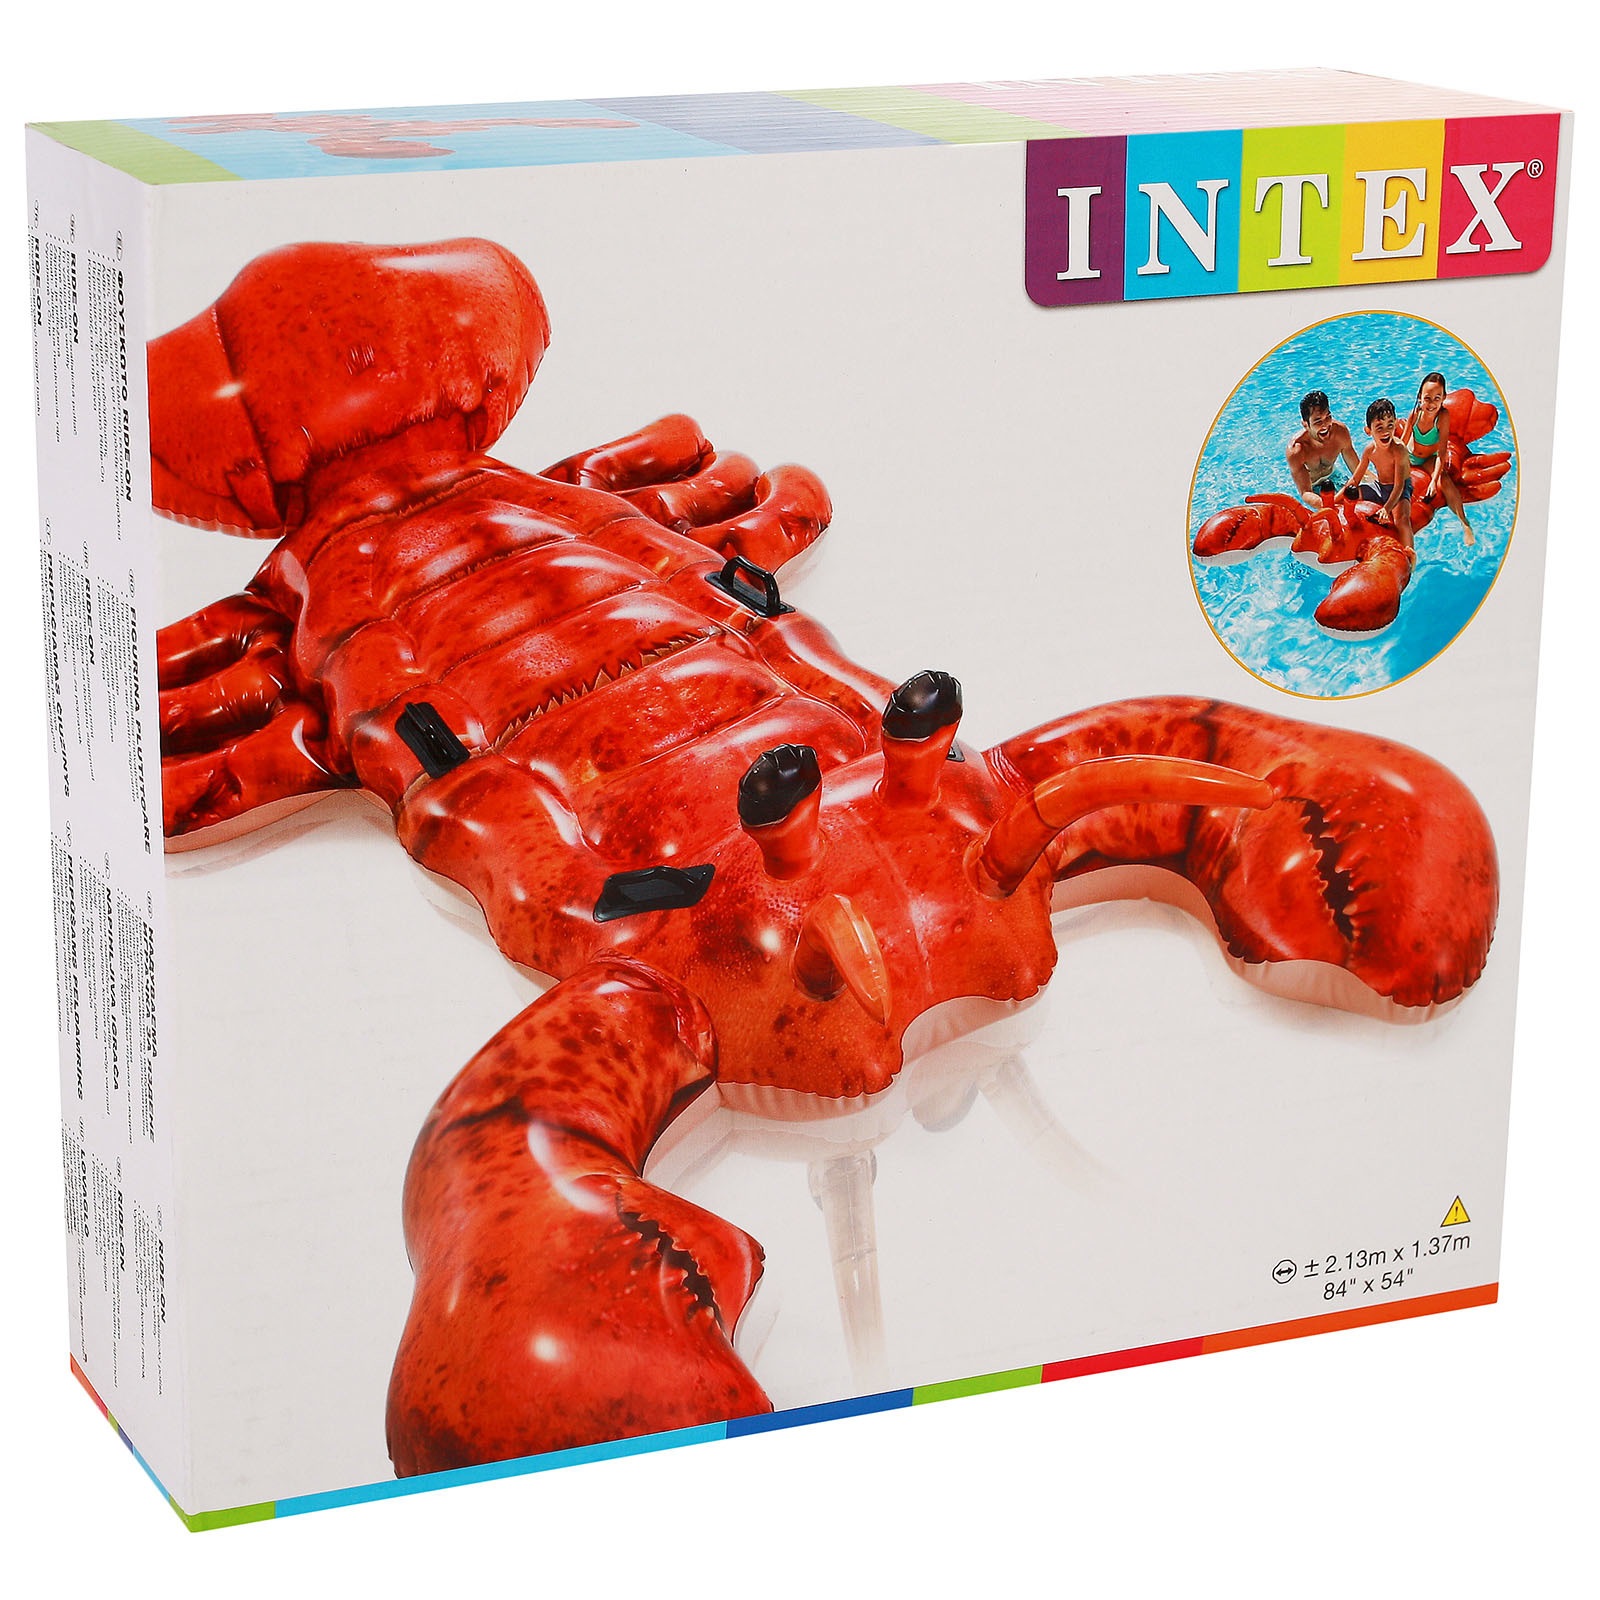 Надувная игрушка Intex лобстер, 213х137 см, от 3 лет